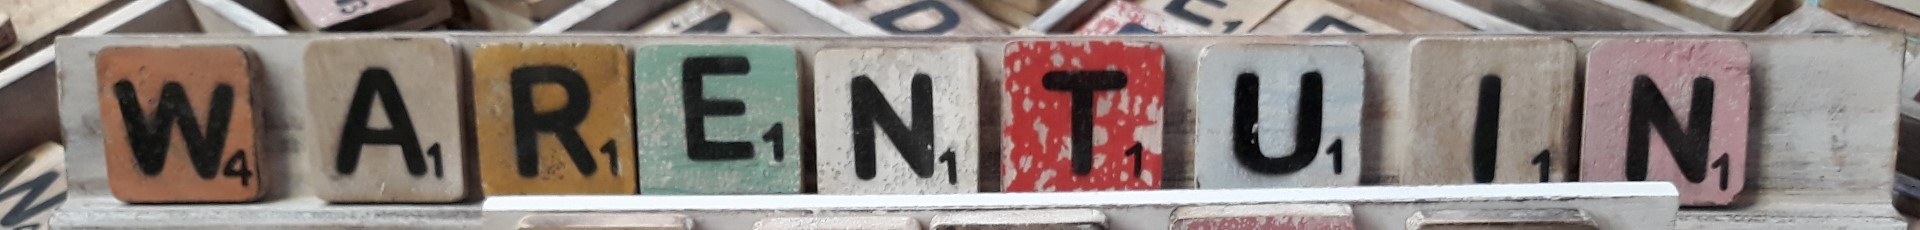 Scrabble letterplankje 60 cm